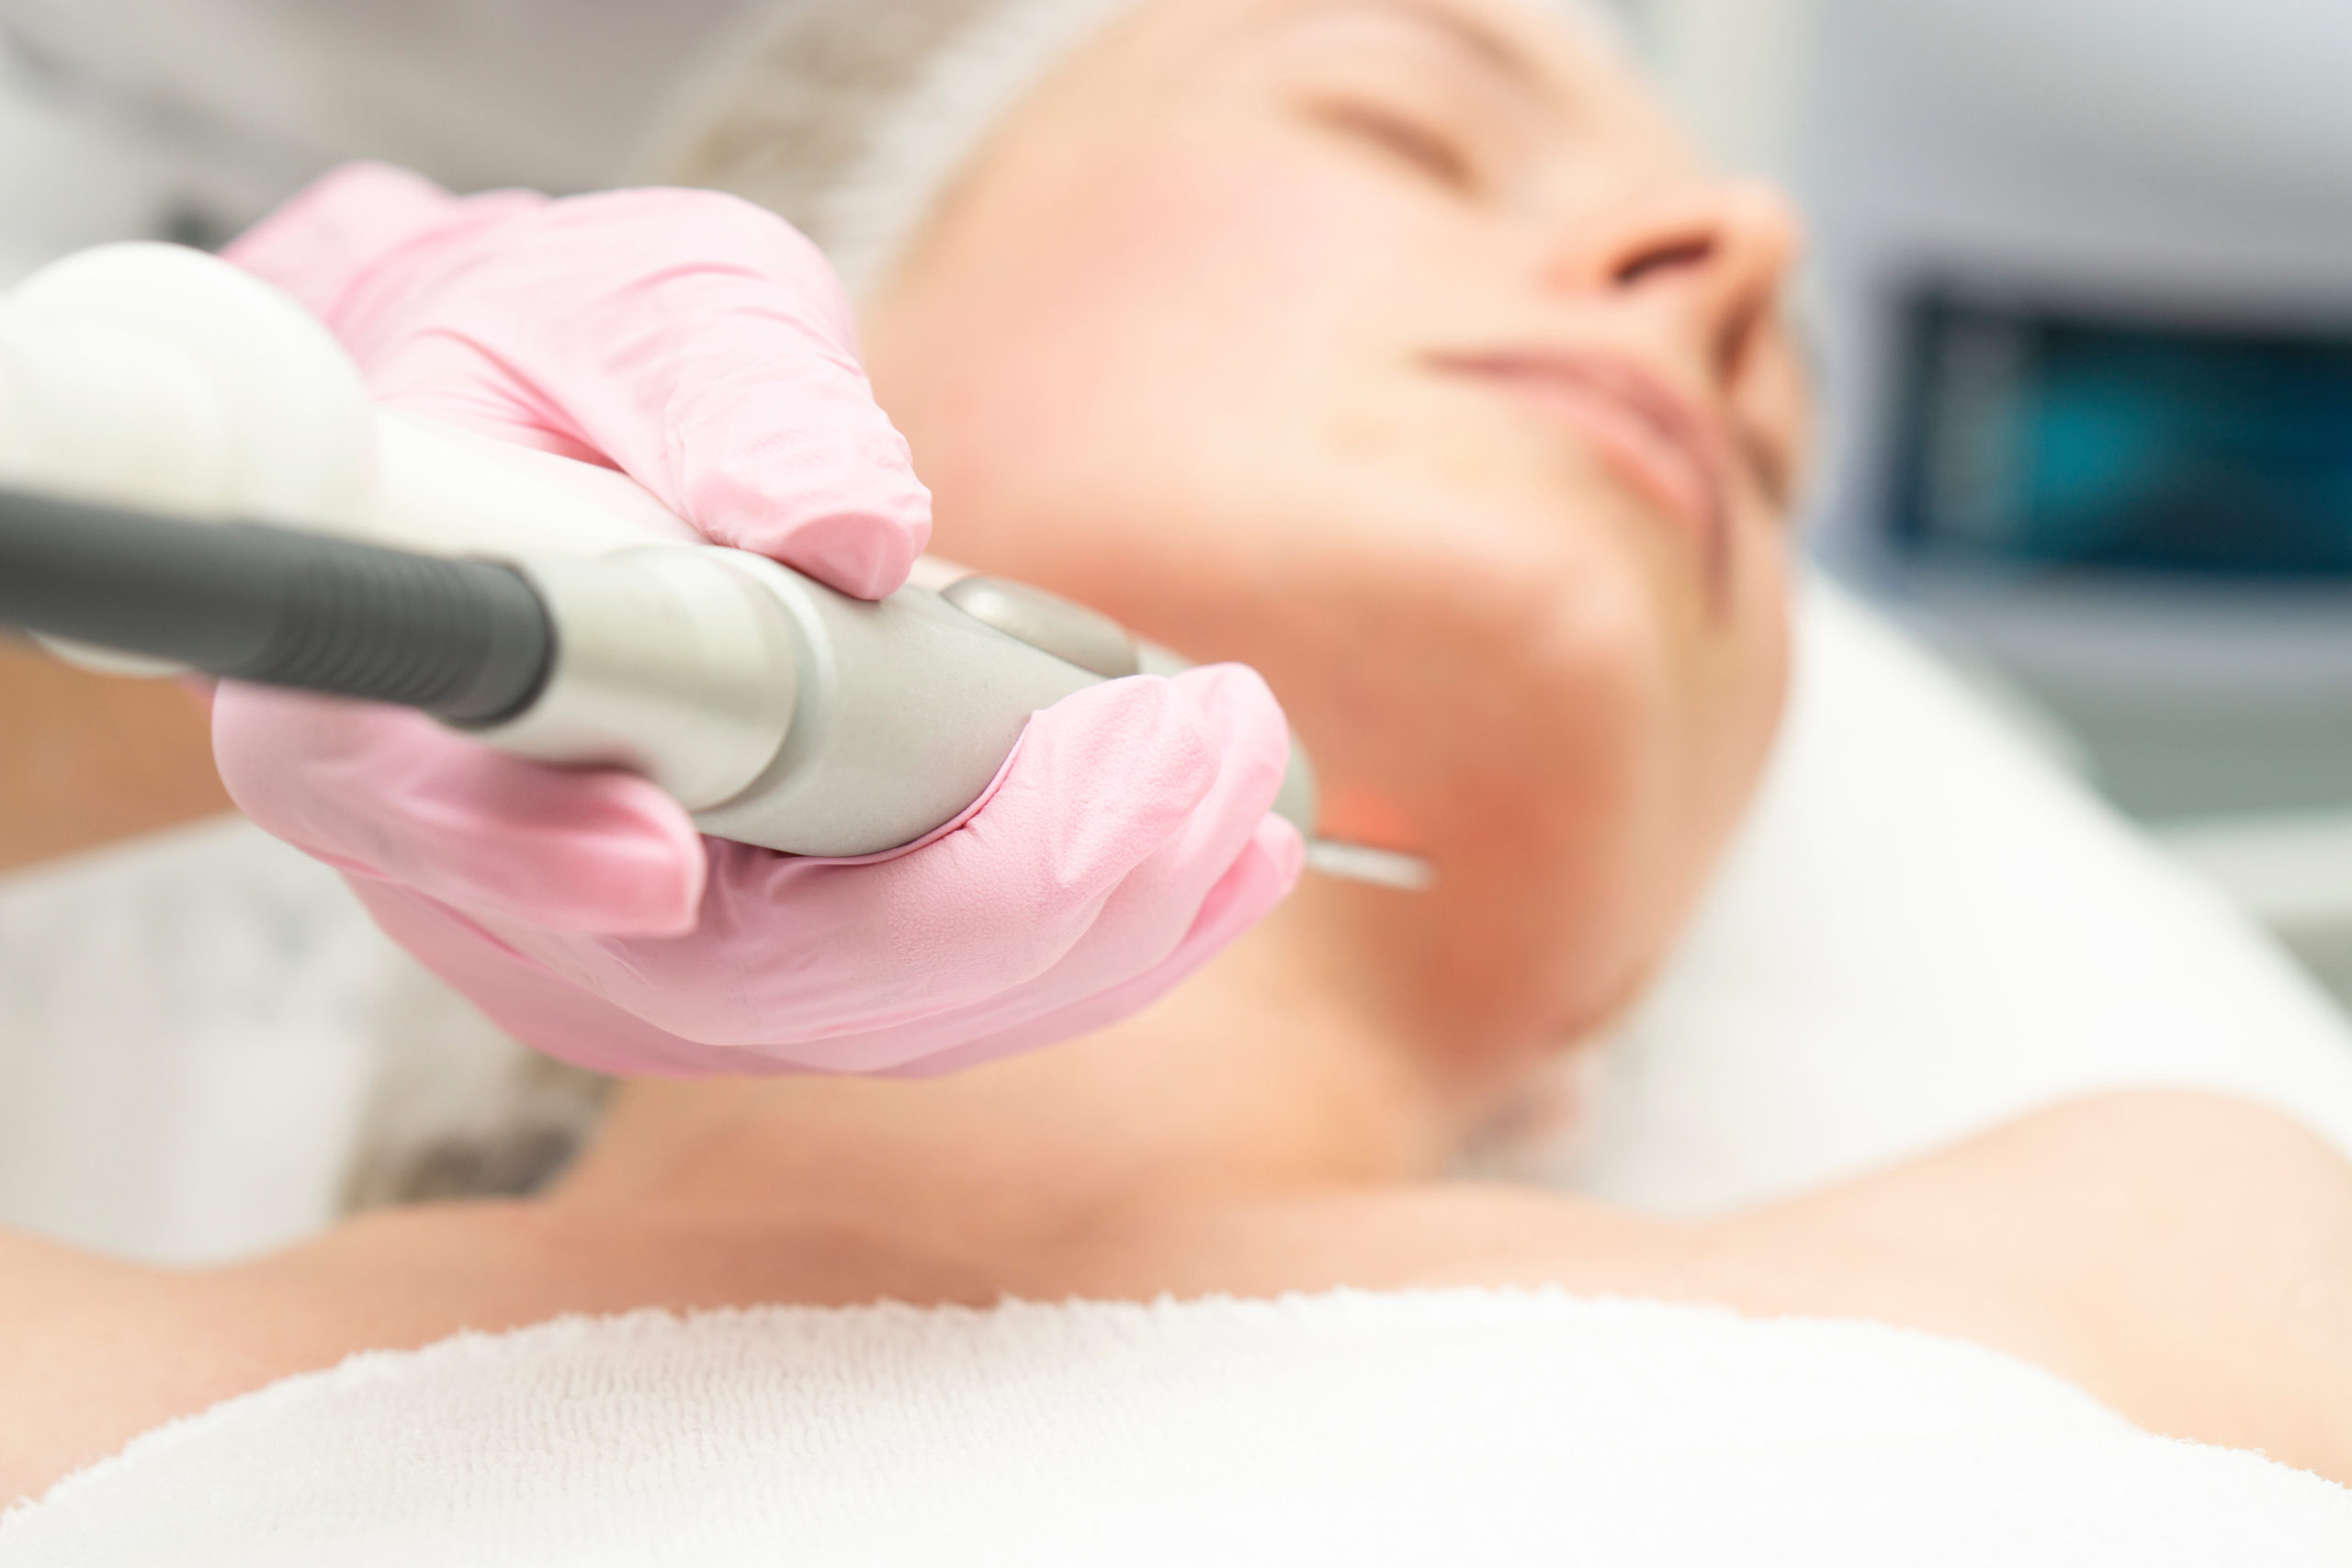 Doctor cosmetologist makes a laser dermal rejuvenation procedure